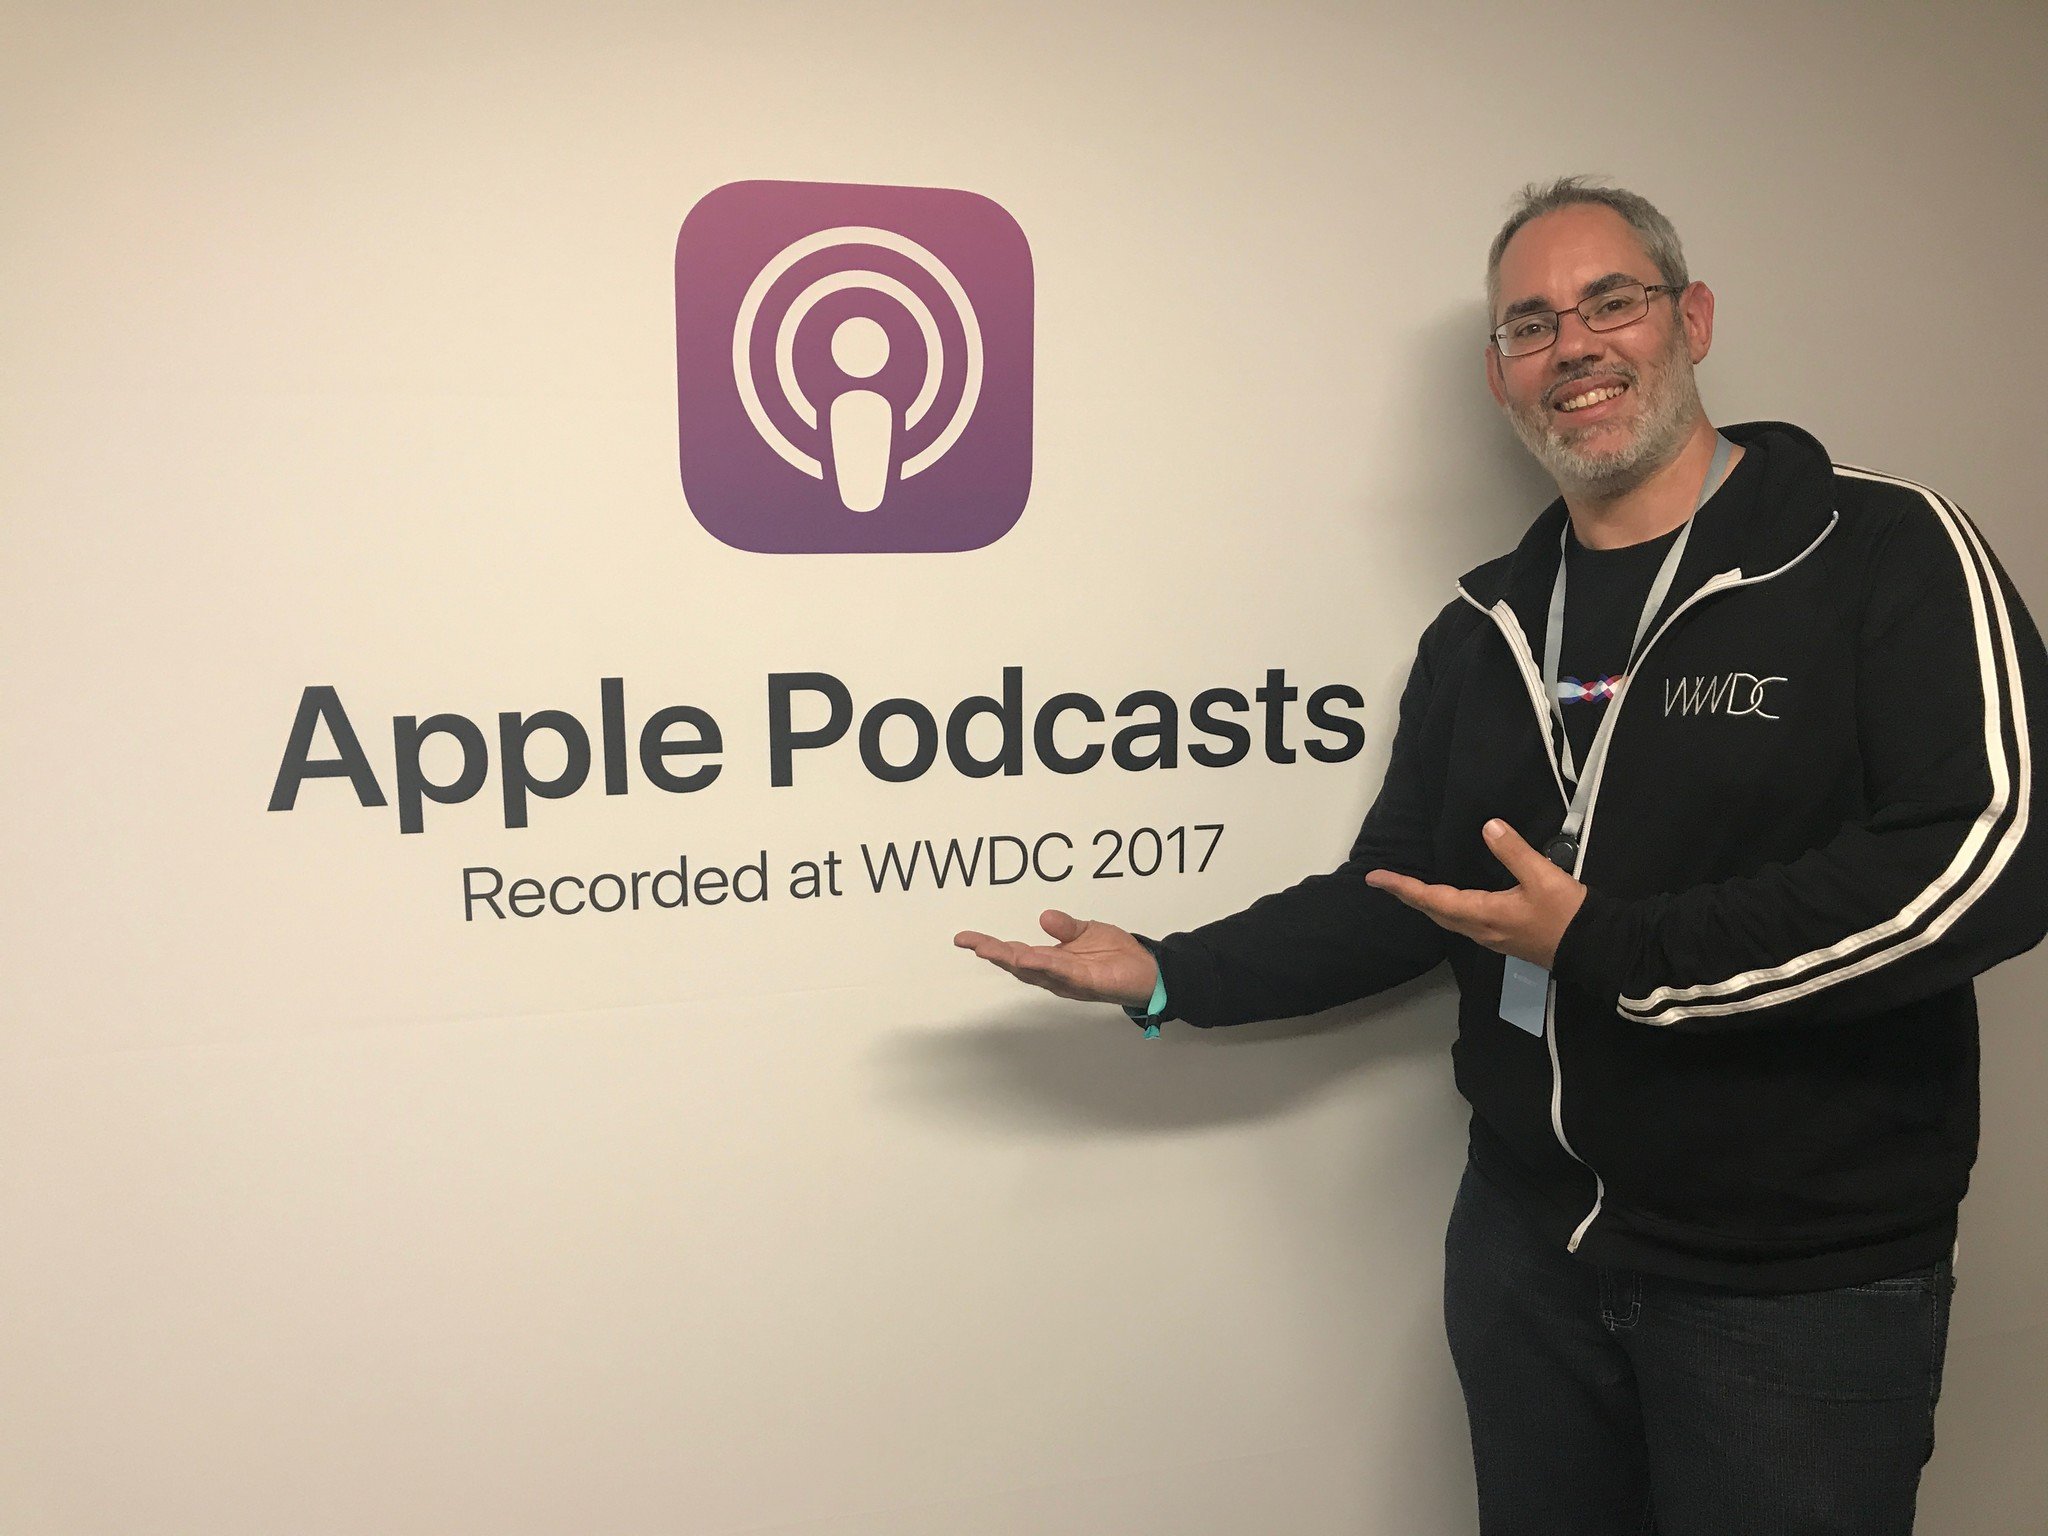 Apple&#39;s podcast analytics tools go into beta